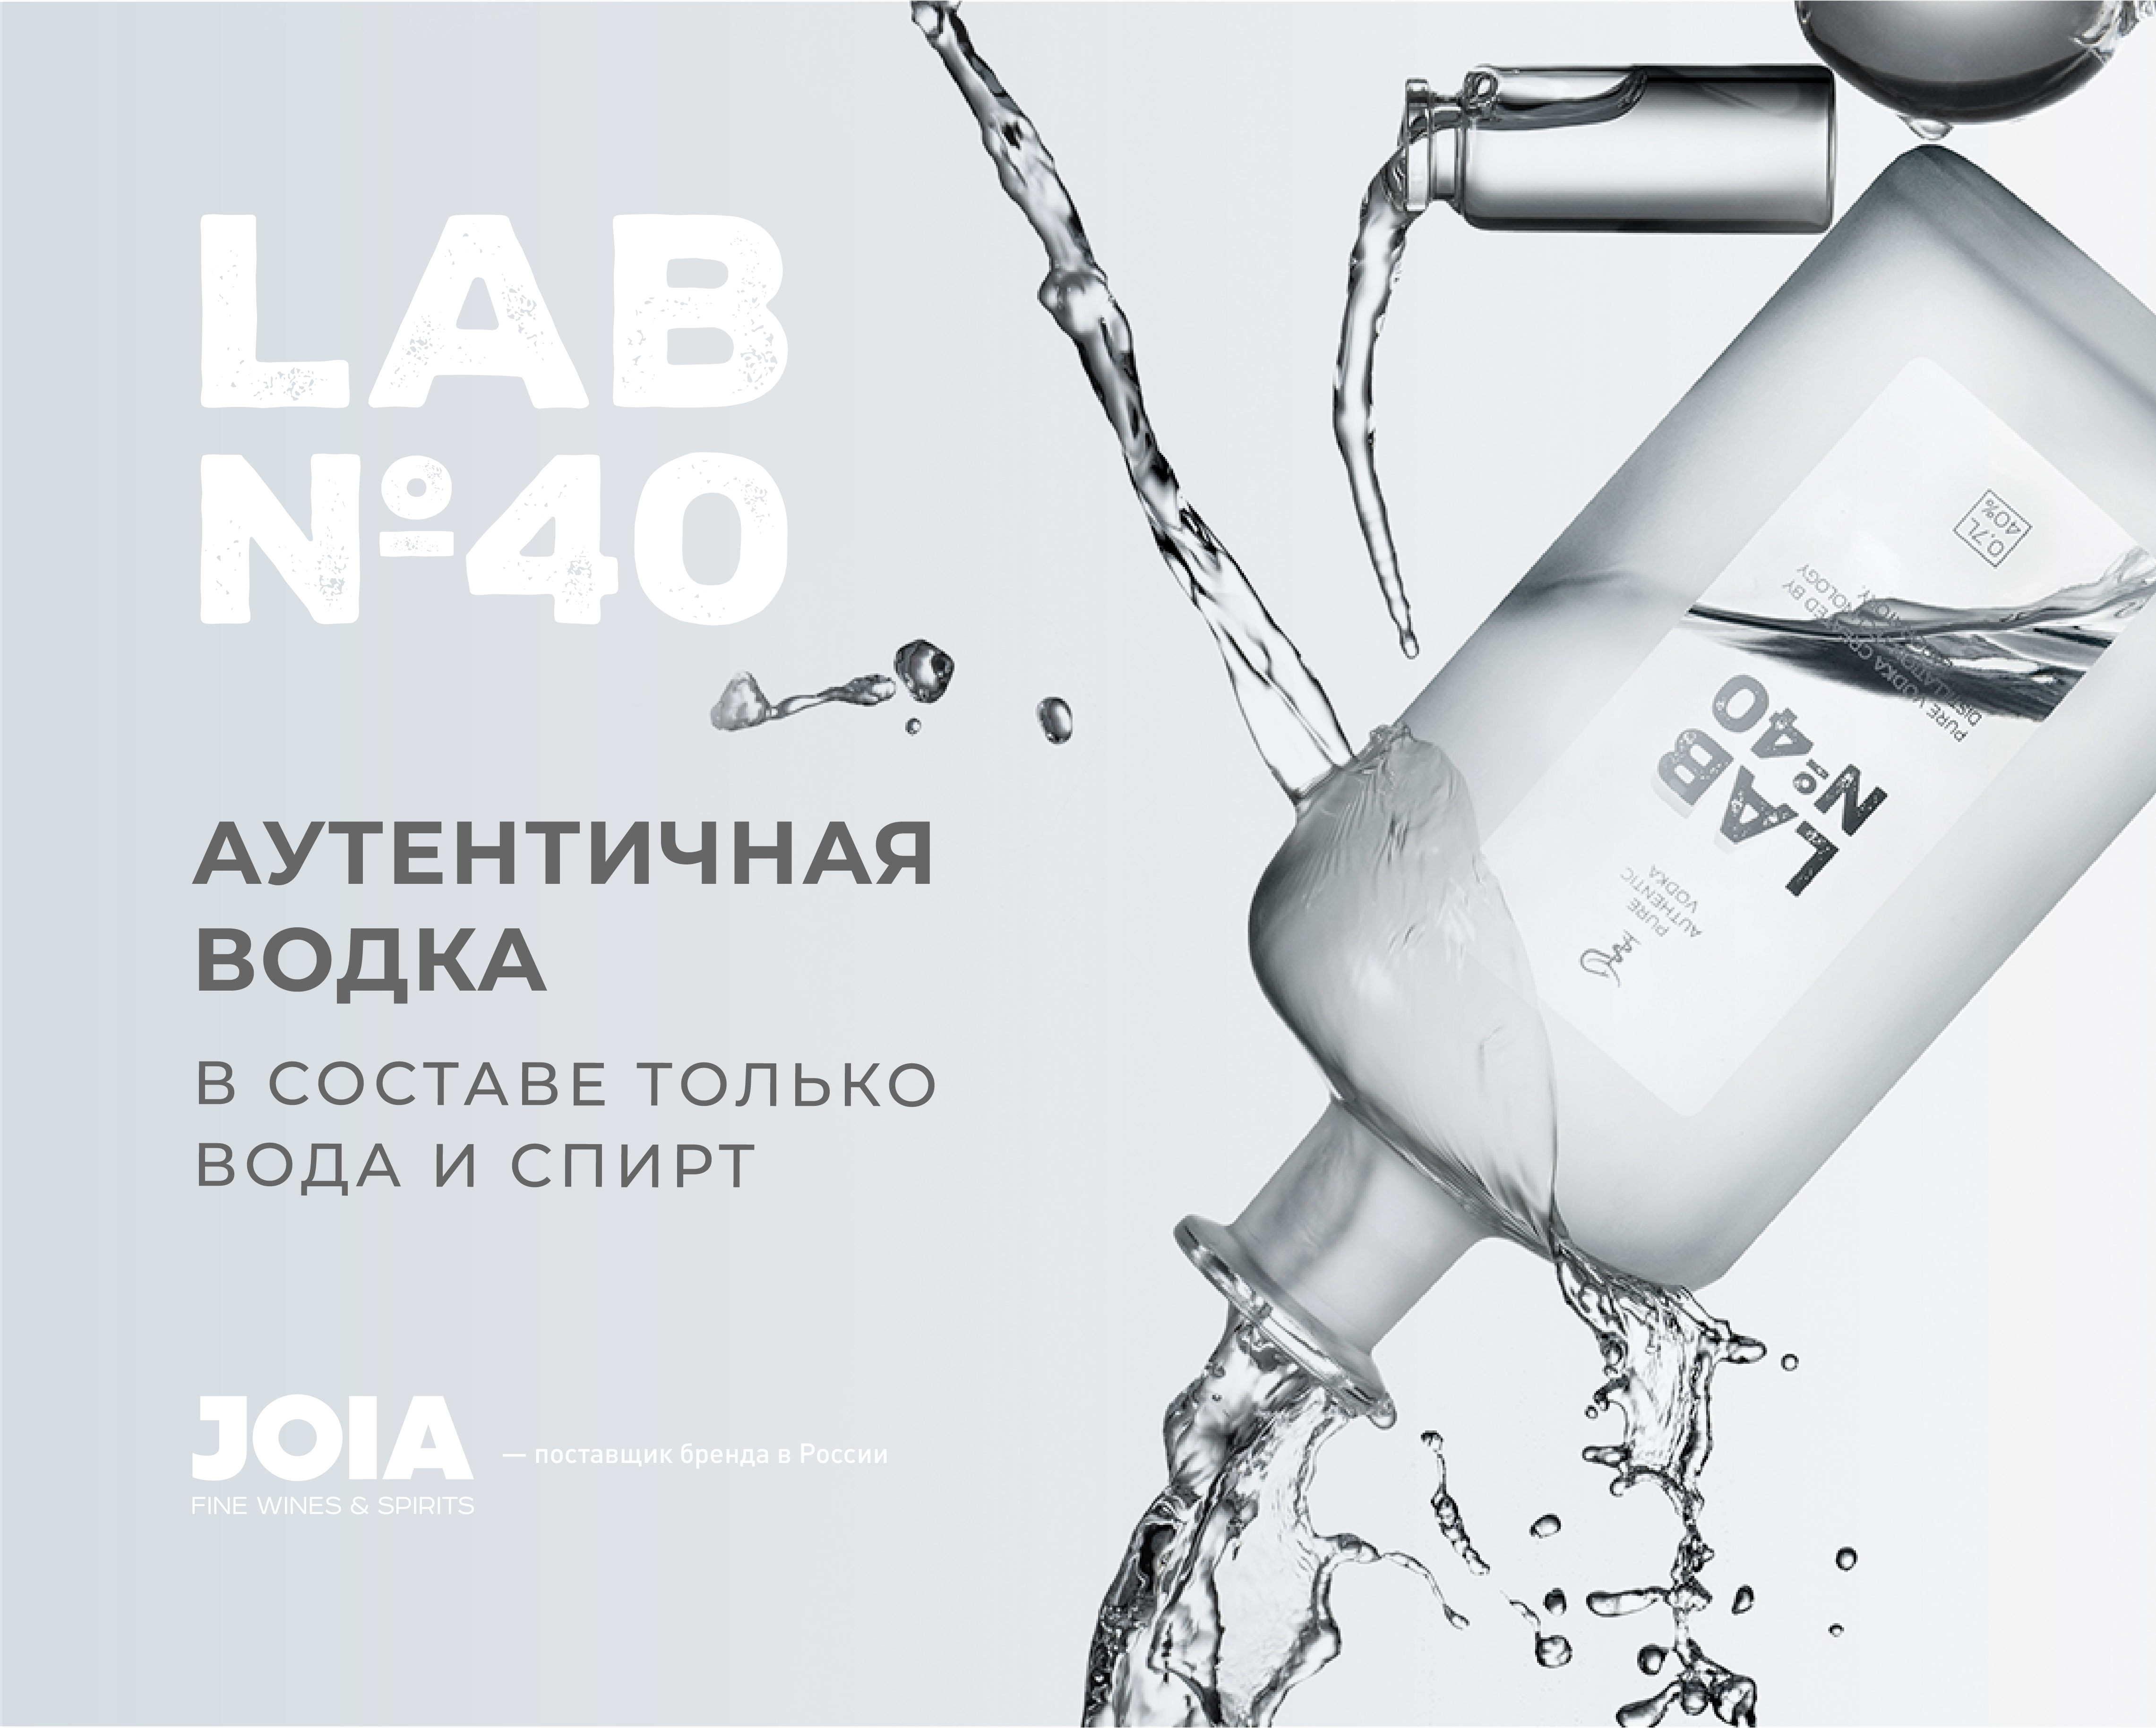 Lab 40